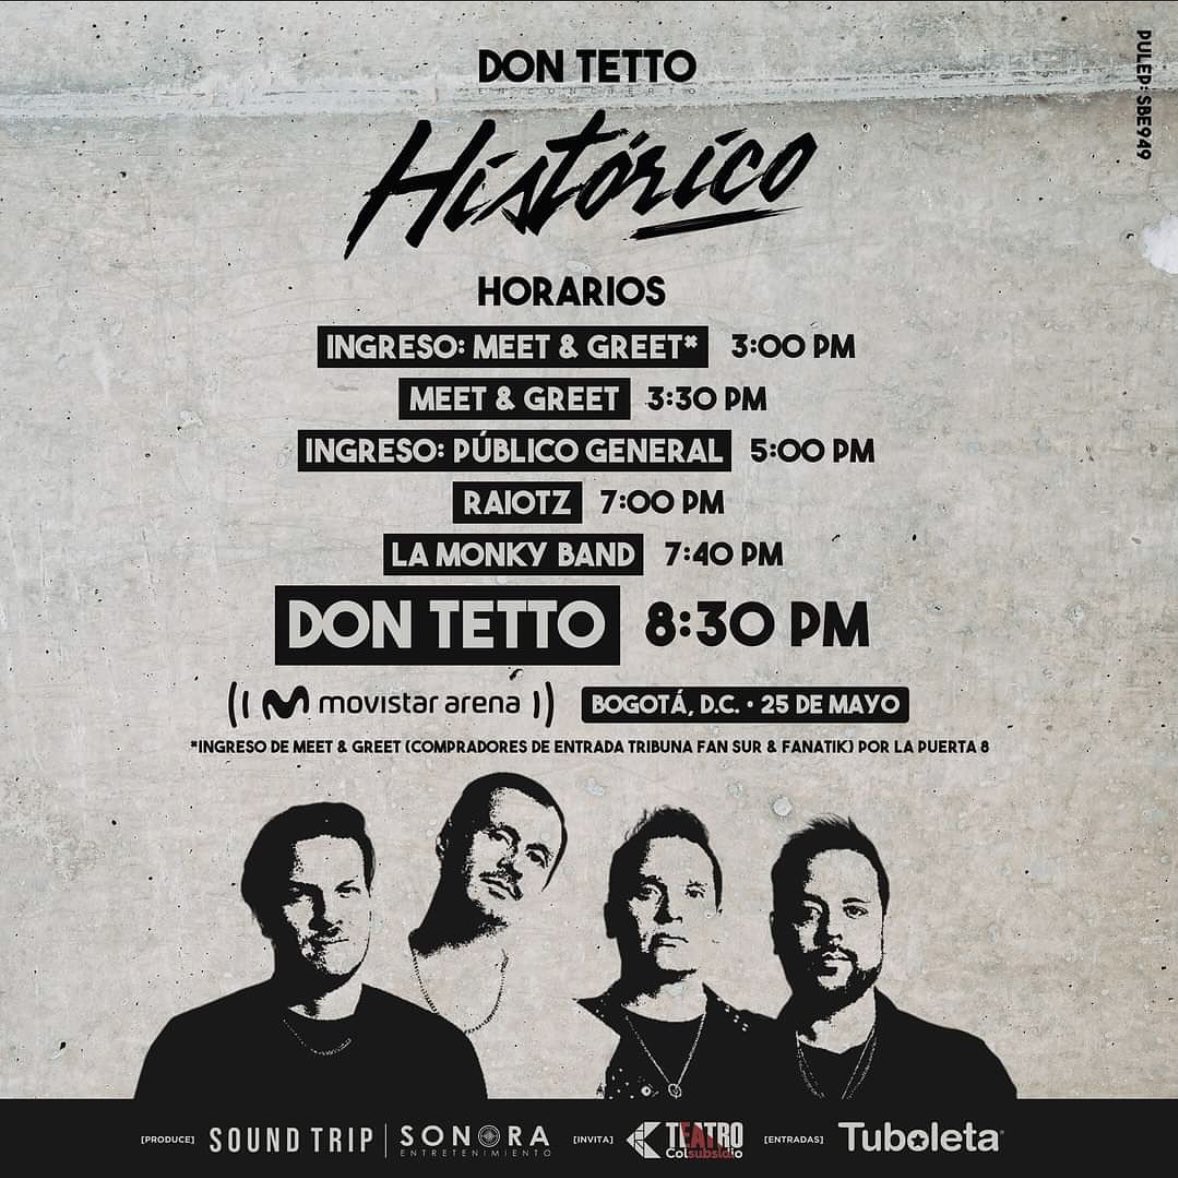 Horarios para el HISTÓRICO show de Don Tetto en el Movistar Arena HOY, celebrando 20 años de carrera ❤️‍🔥